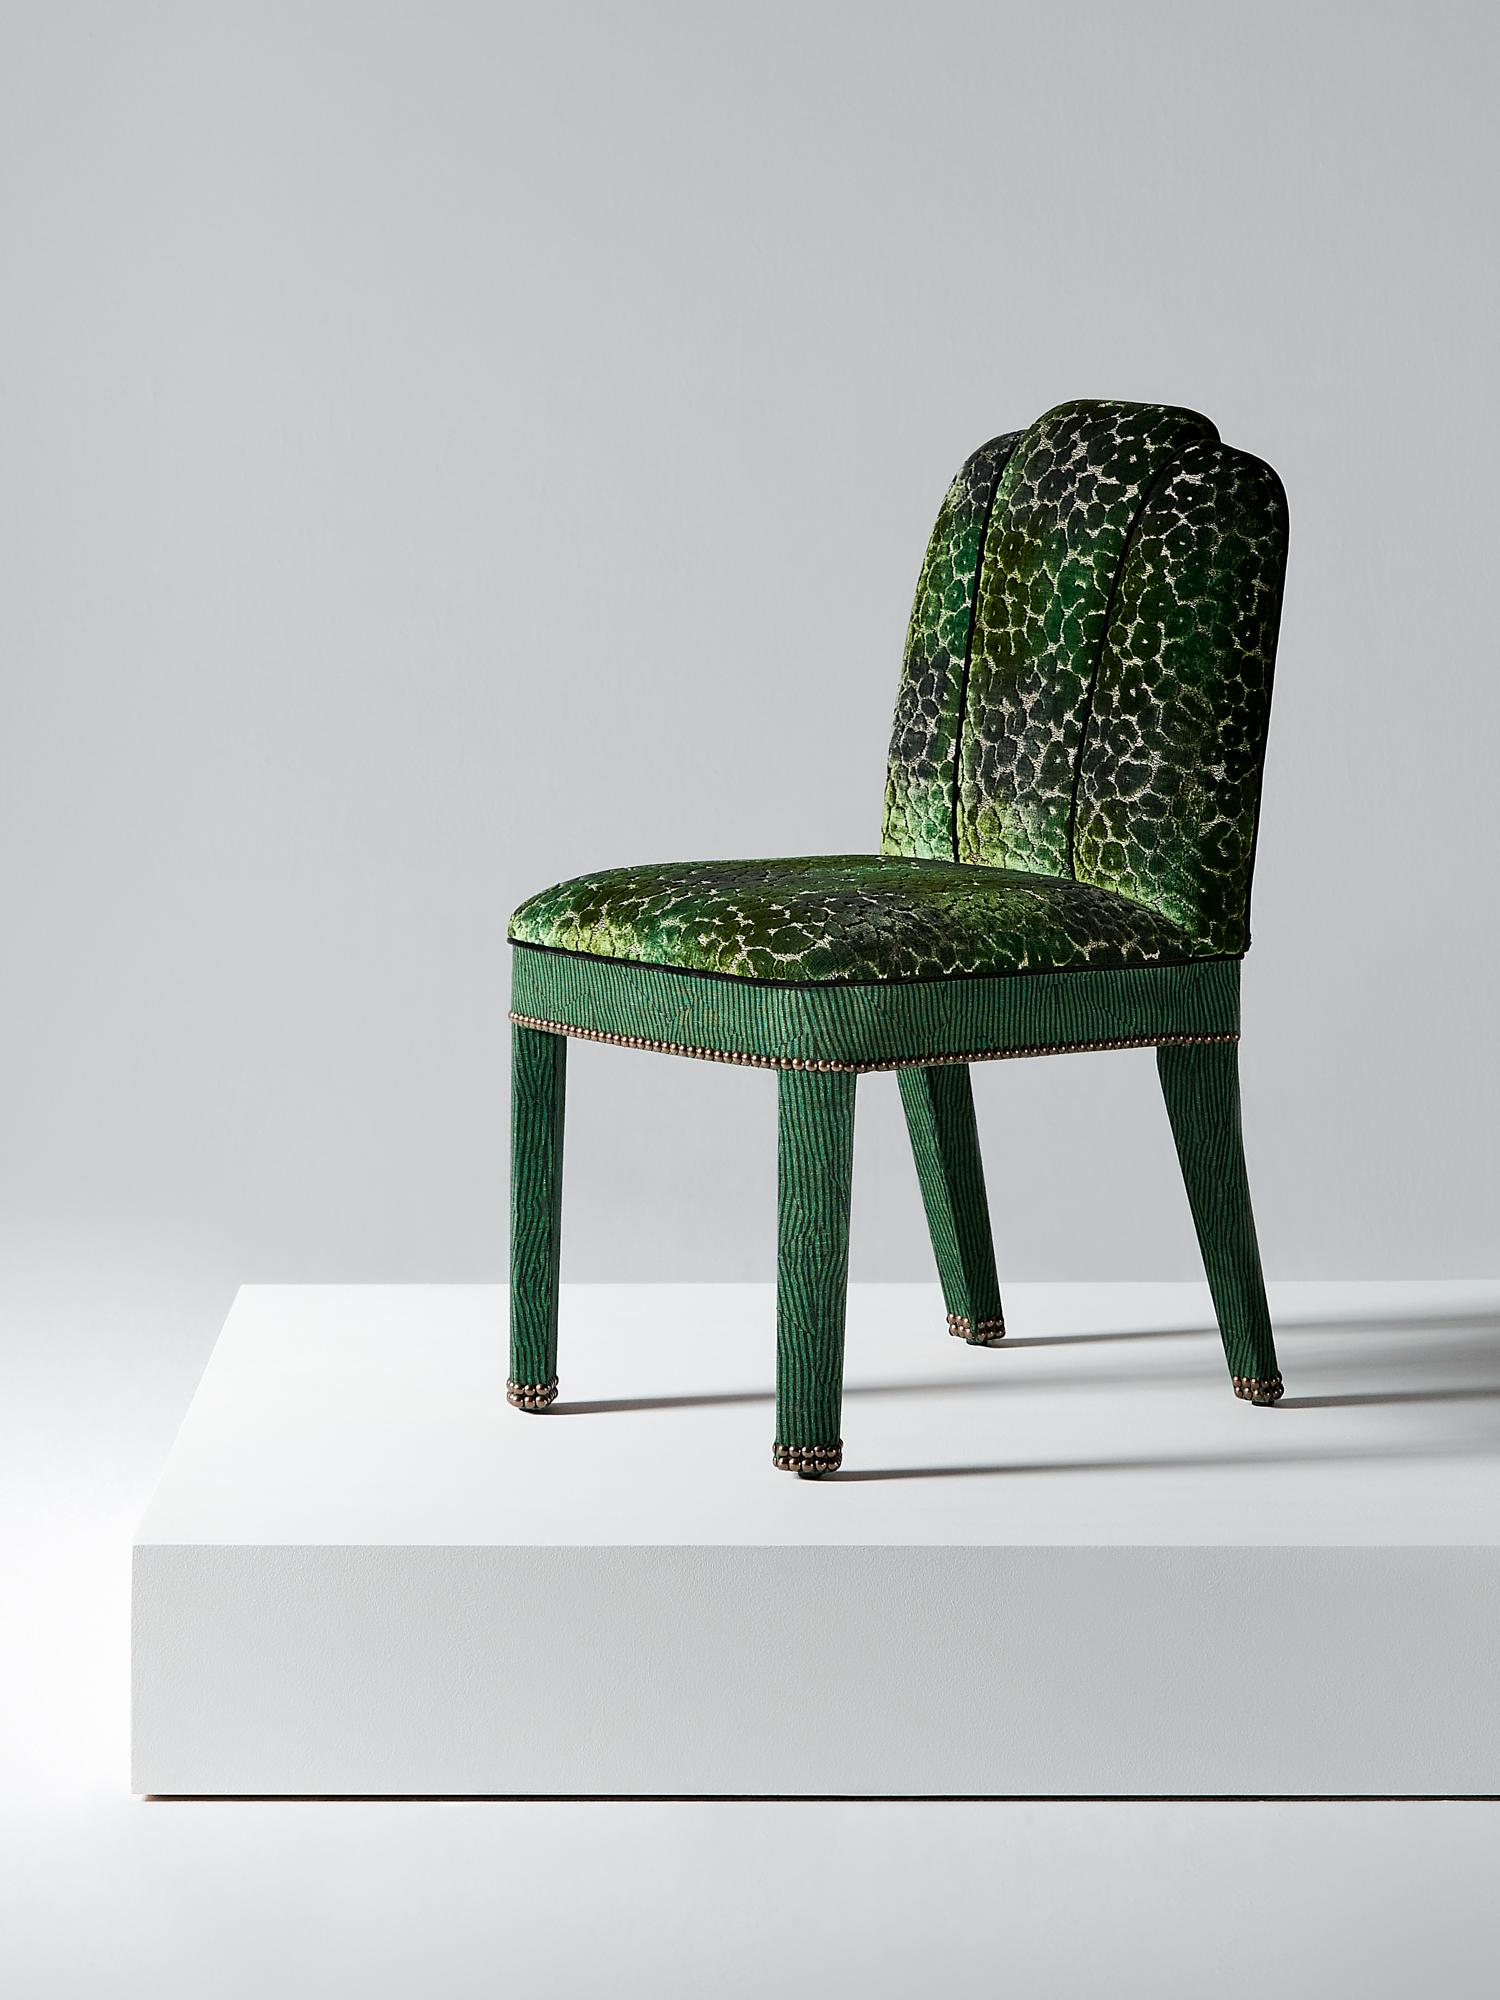 And Objects, studio de design de produits fondé par Martin Brudnizki et Nick Jeanes et basé à Londres.

La chaise de salle à manger Abbas est une version contemporaine de la chaise de salle à manger rembourrée classique. Elle soutient parfaitement